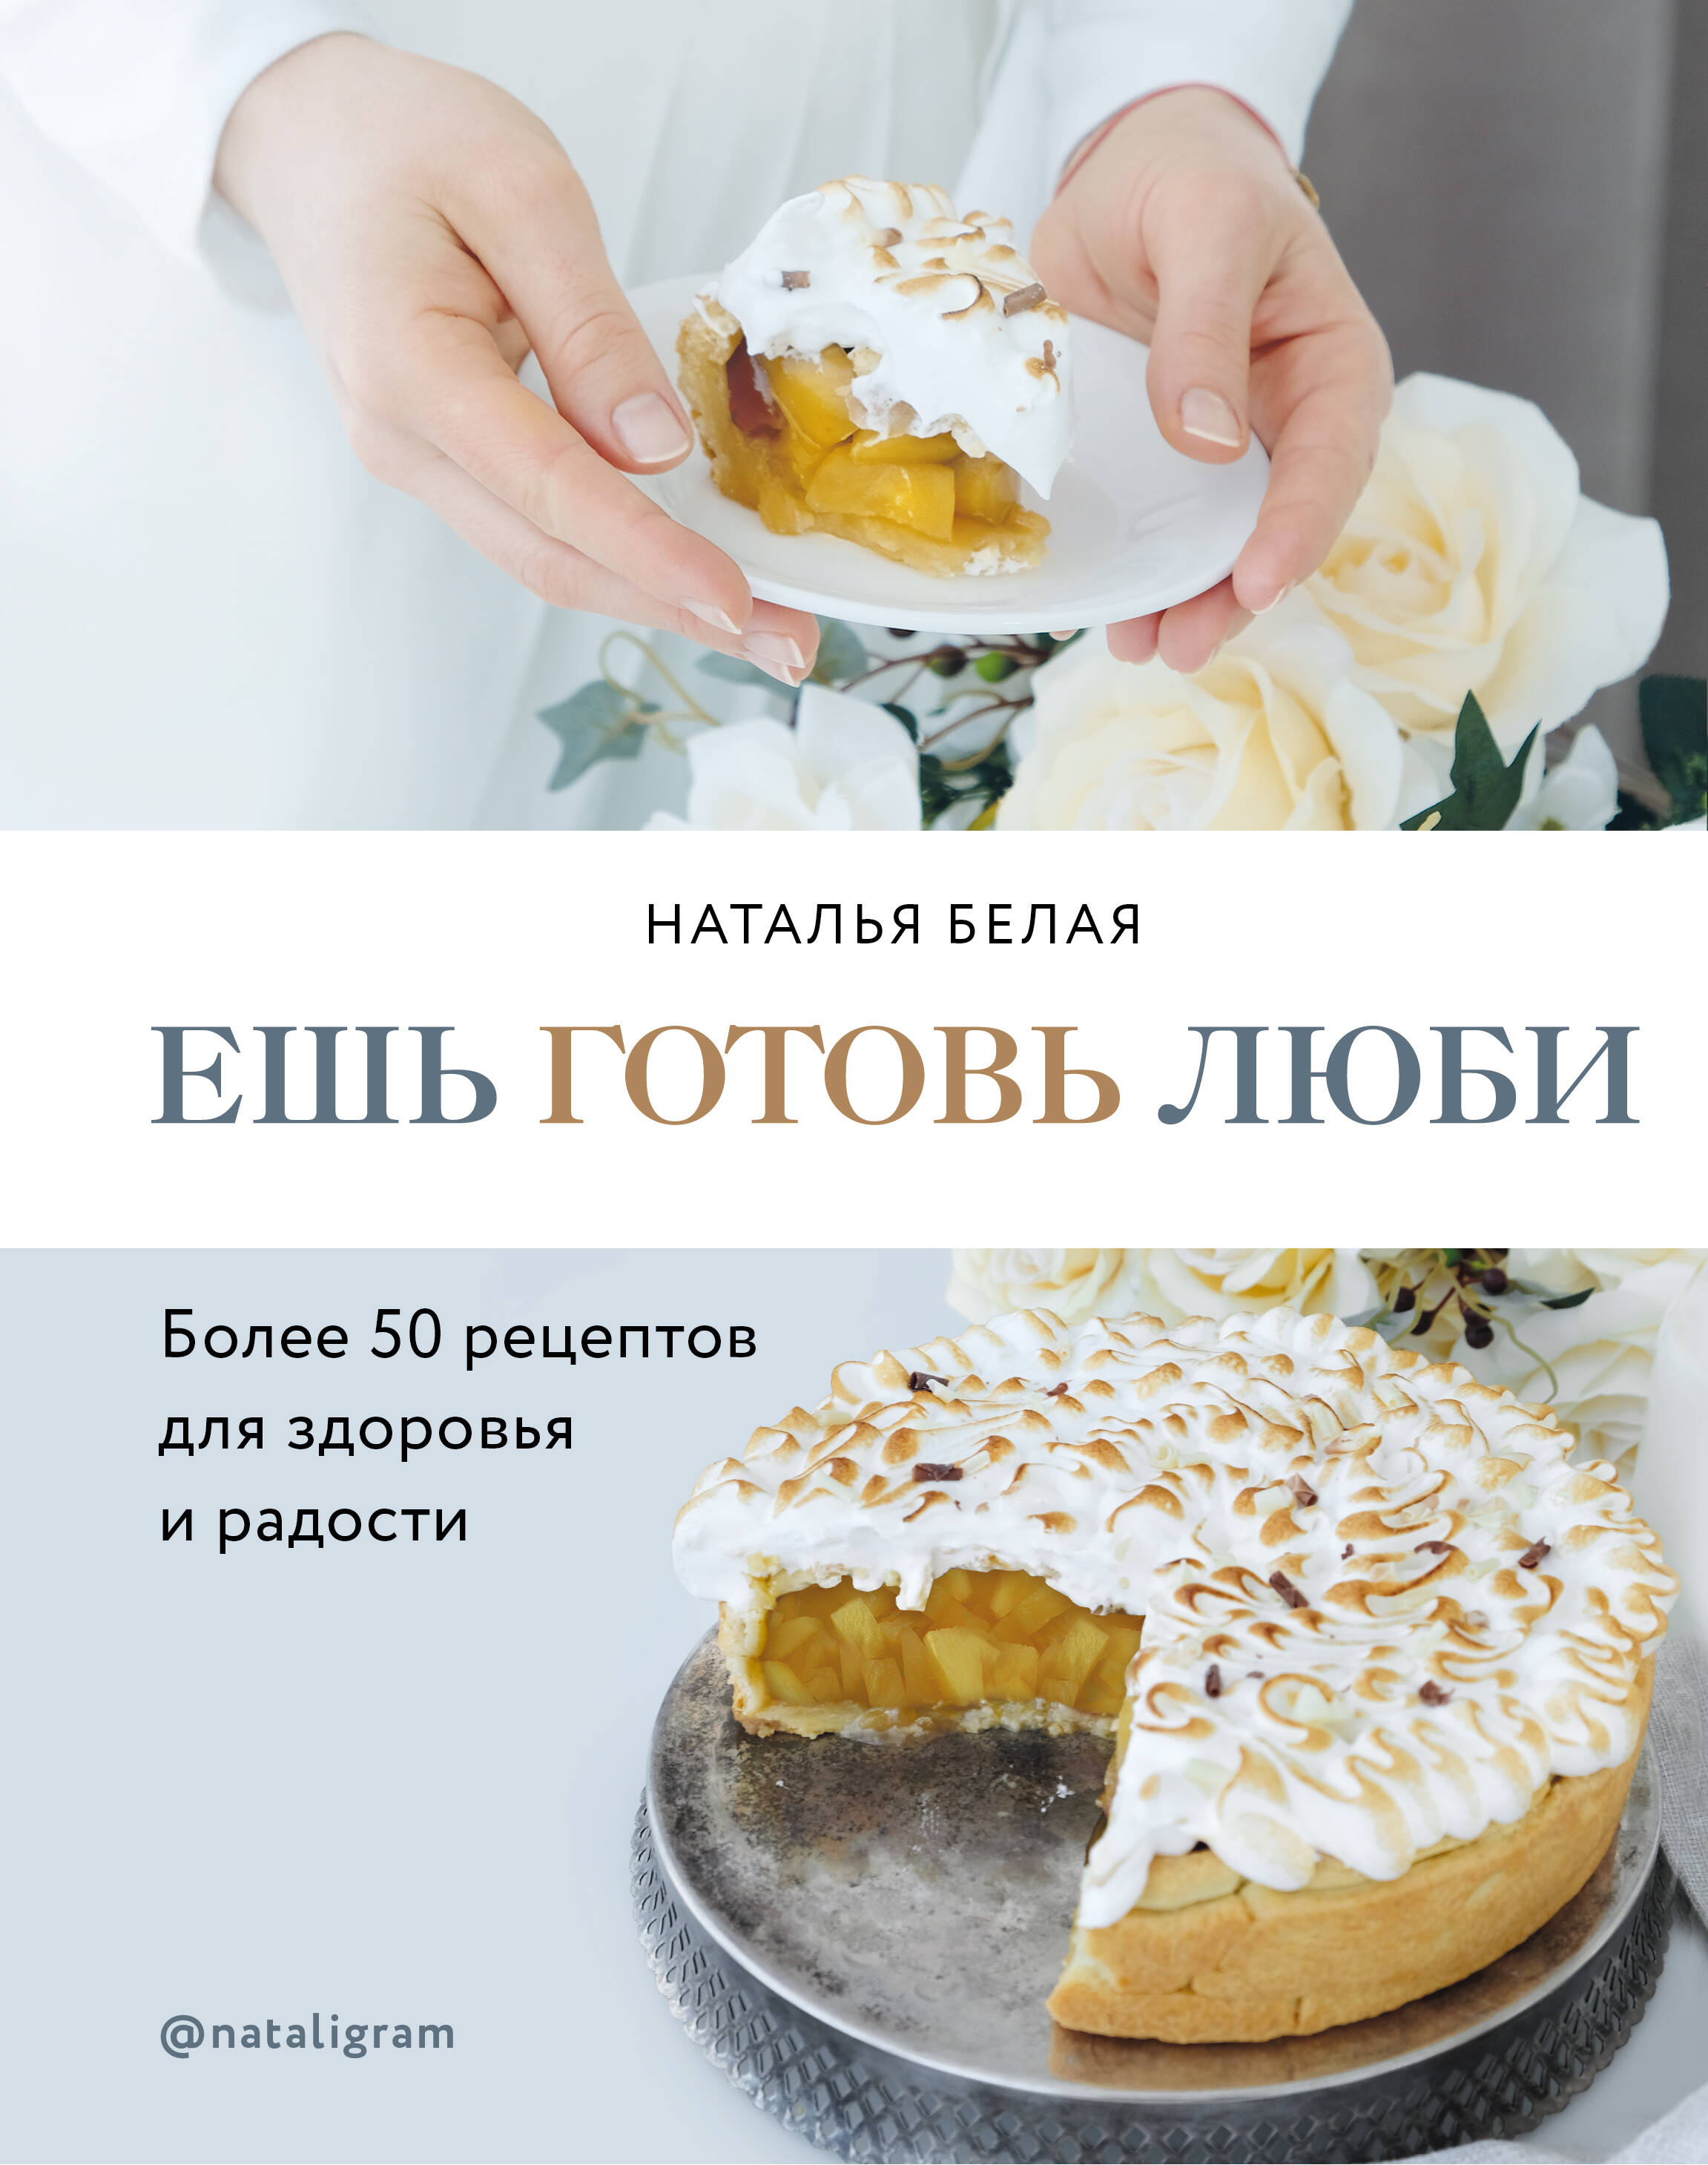 Белая Наталья Ешь, готовь, люби белая наталья ешь готовь люби более 50 рецептов для здоровья и радости